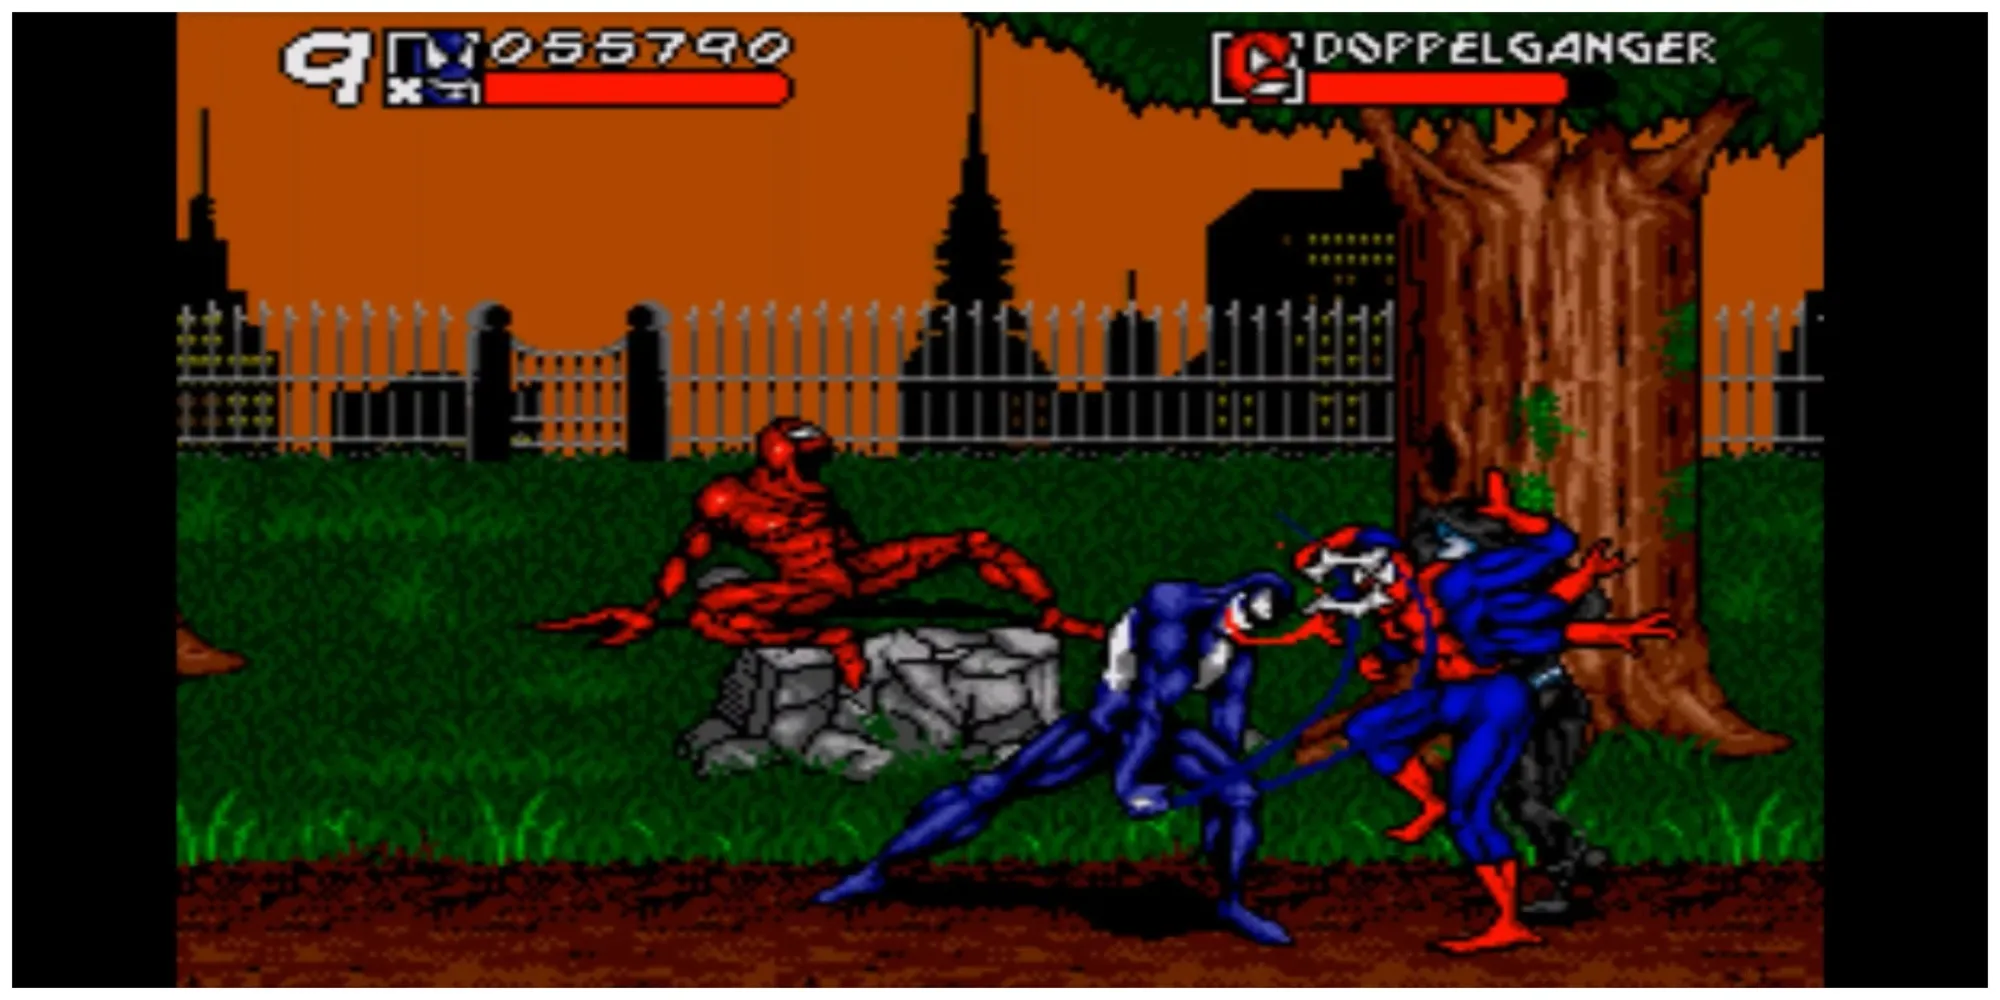 Spider-Man and Venom Maximum Carnage